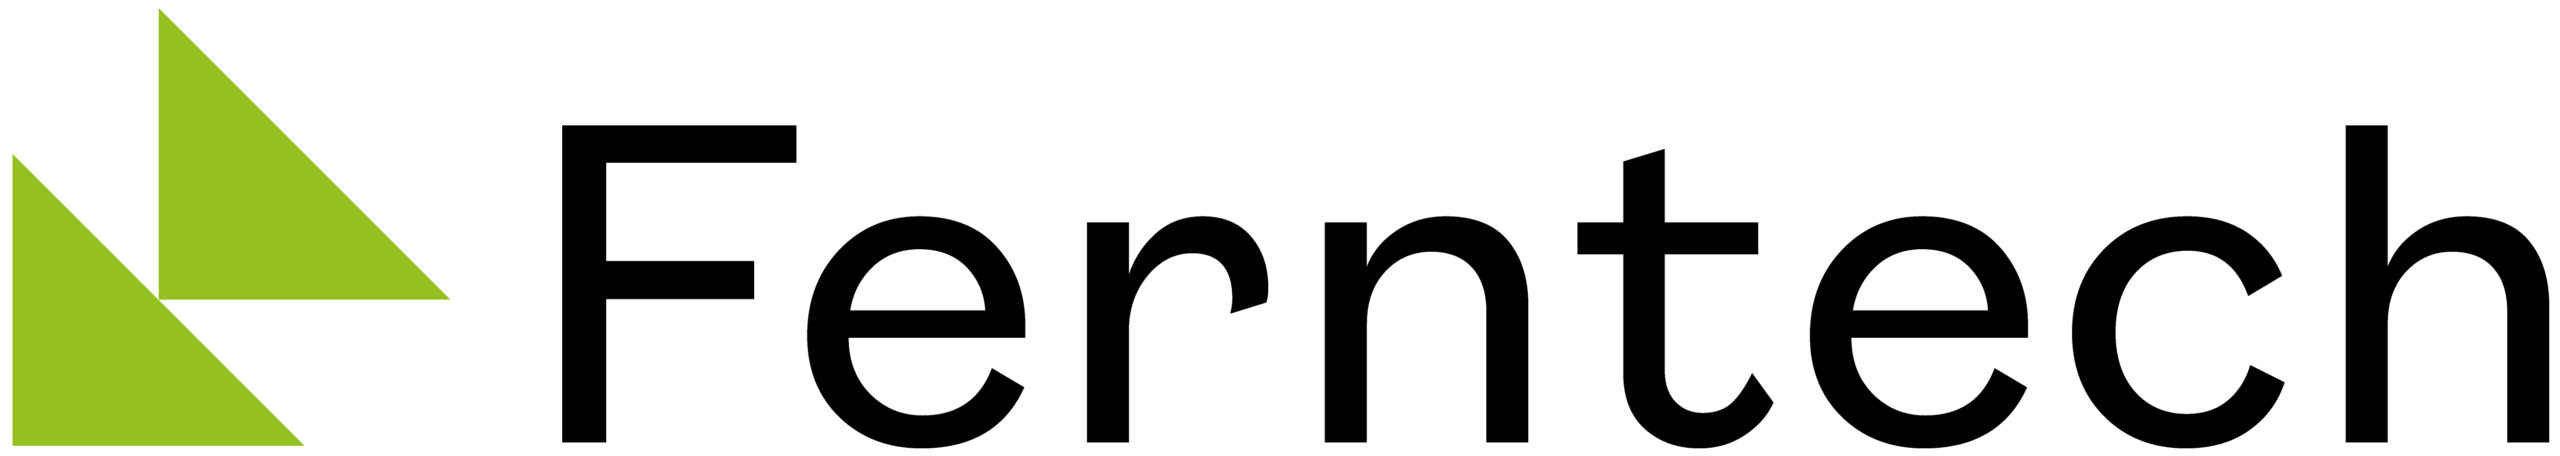 Ferntech-Logo-Colour-Black-HR